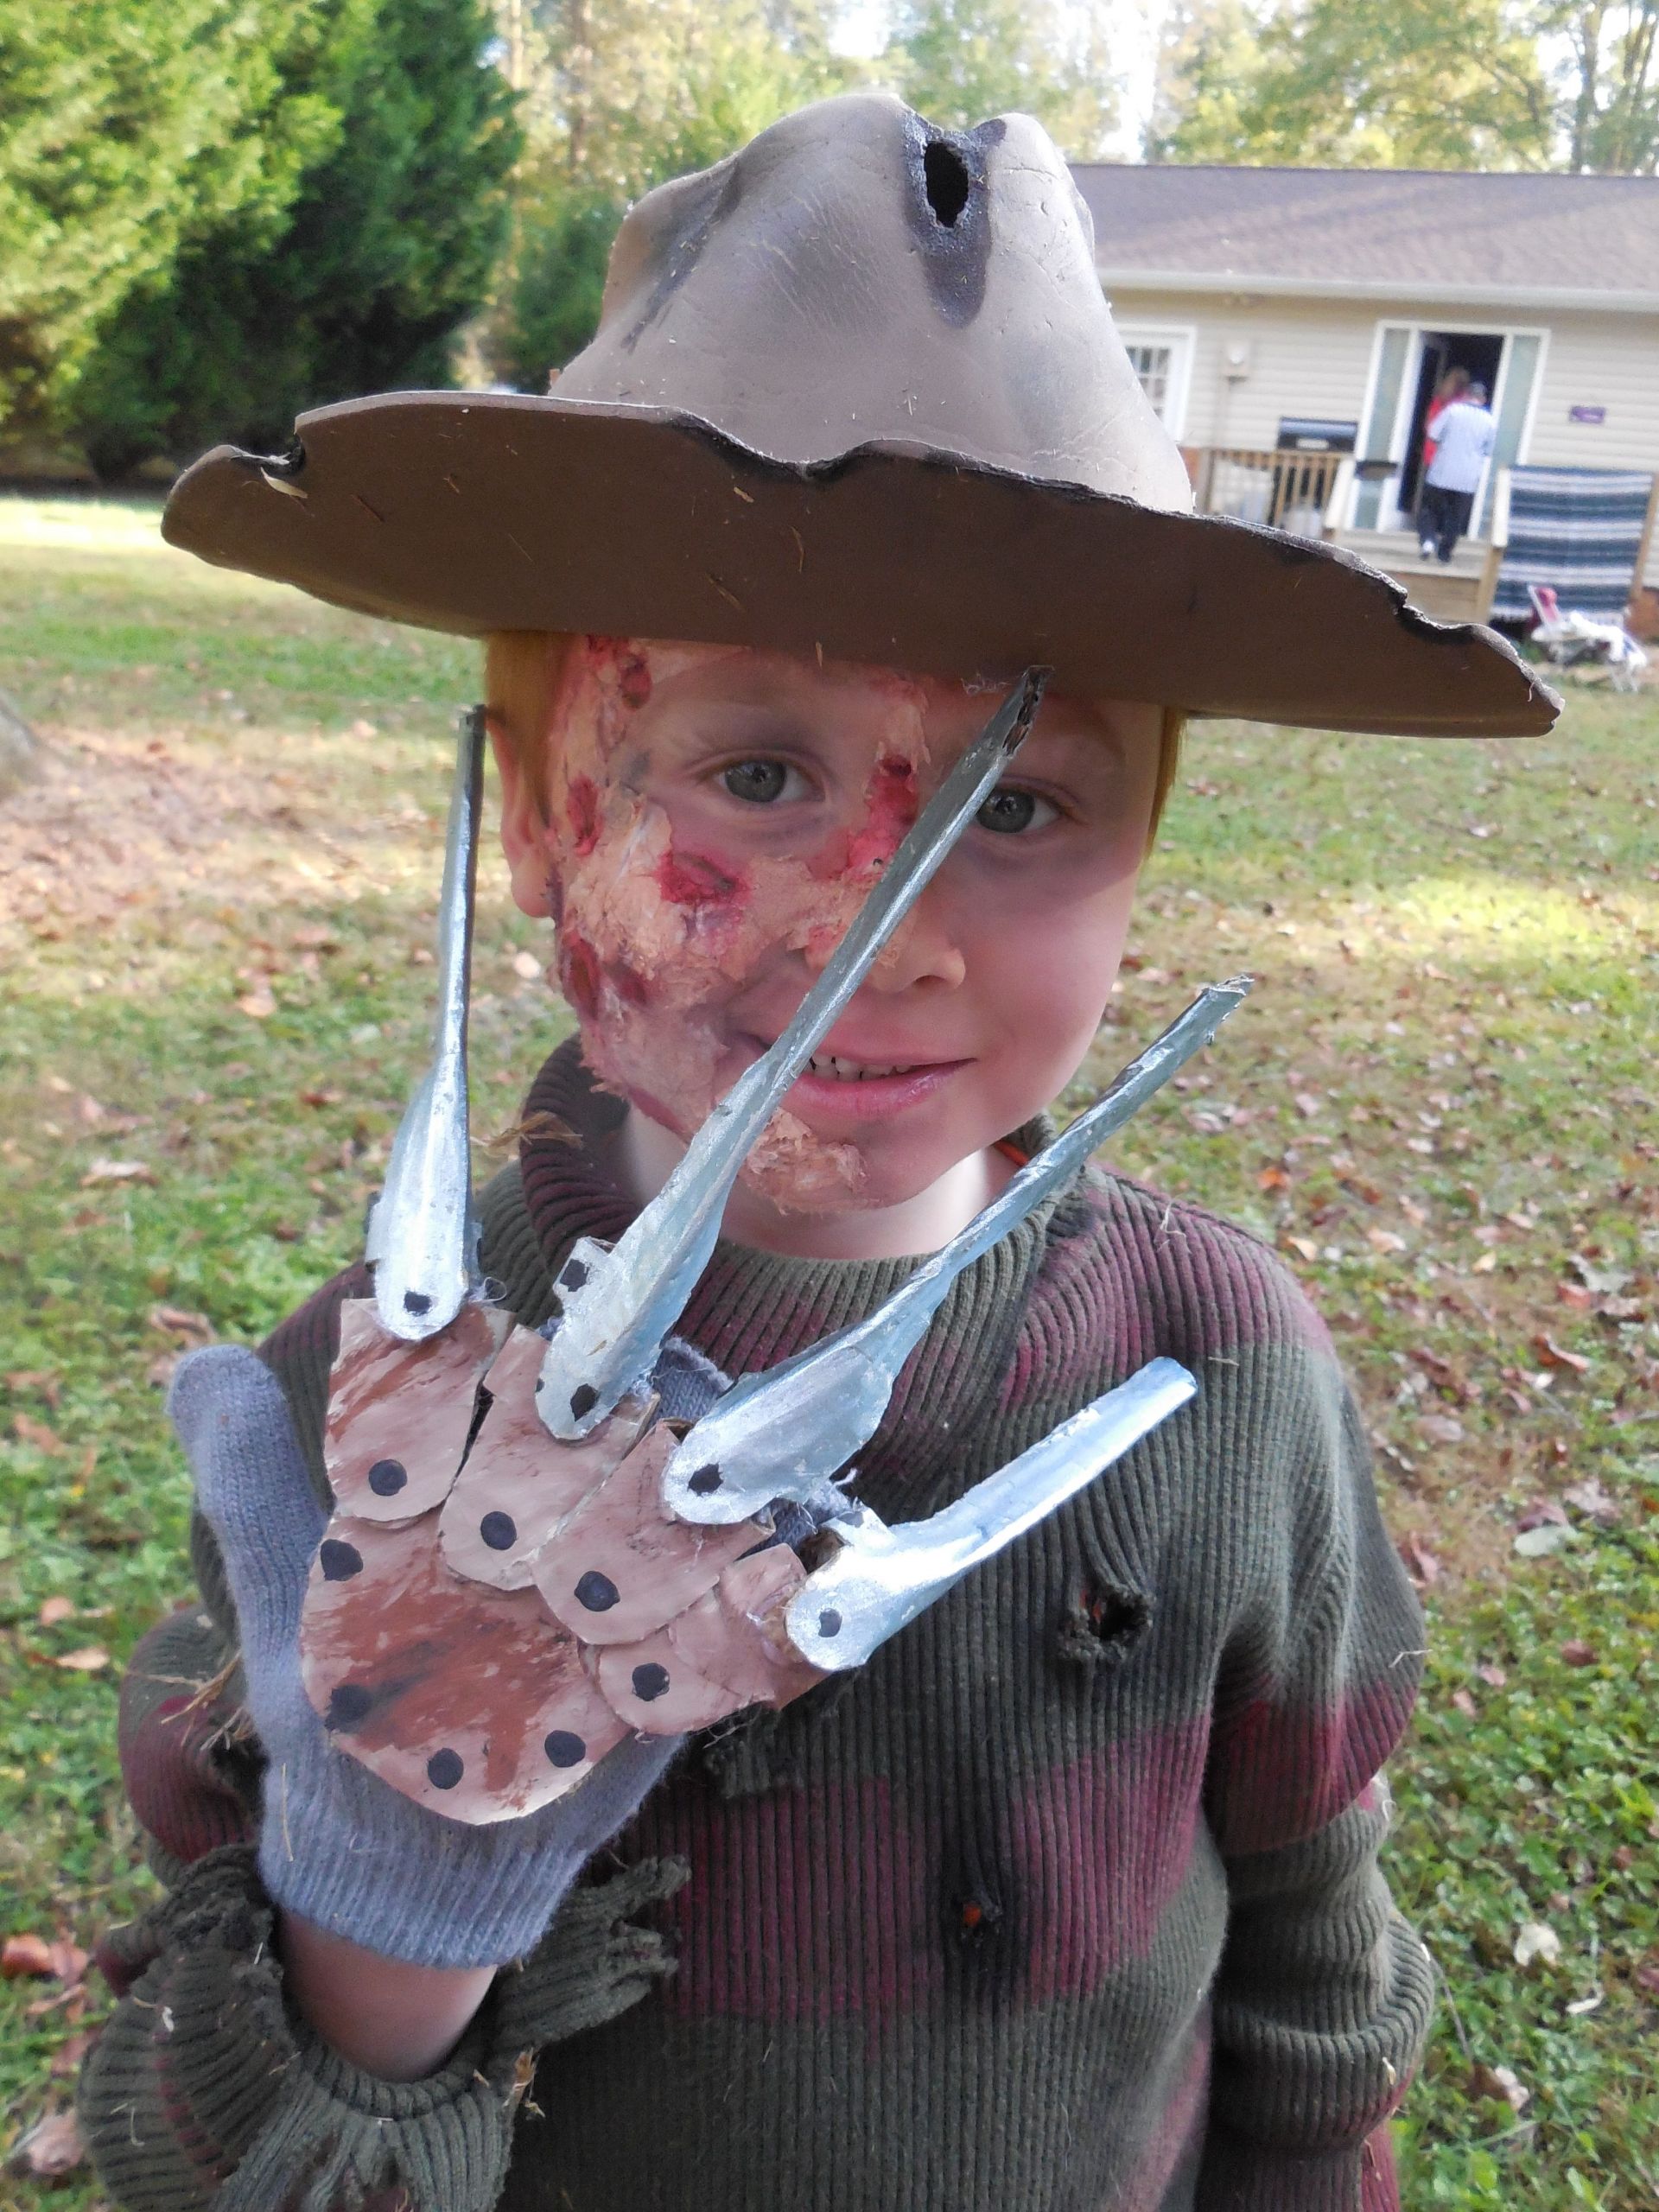 DIY Freddy Krueger Costume
 My DIY freddy krueger costume for my son